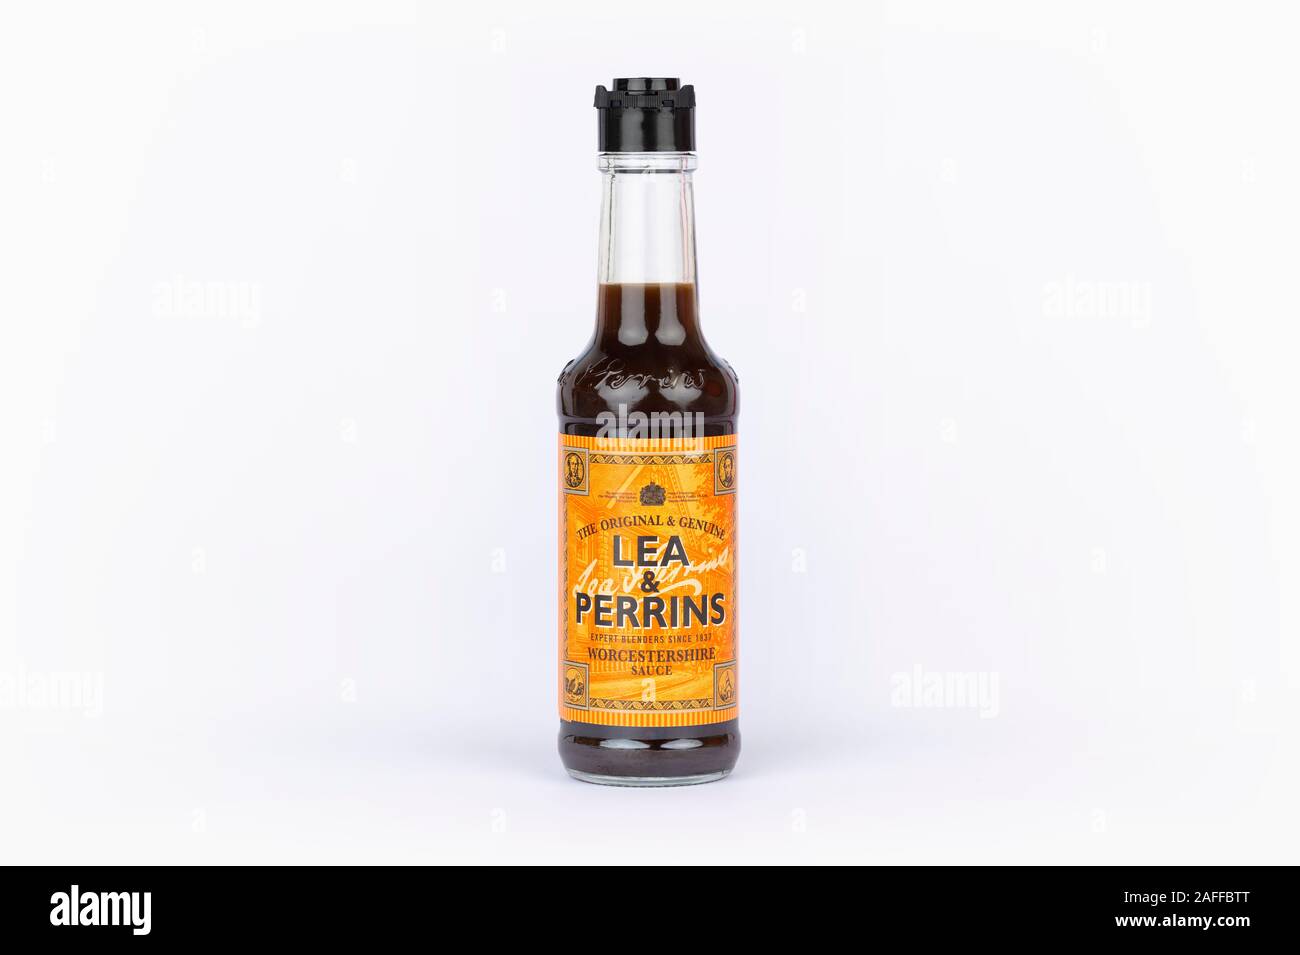 Une bouteille de sauce Worcestershire Lea & Perrins tourné sur un fond blanc. Banque D'Images